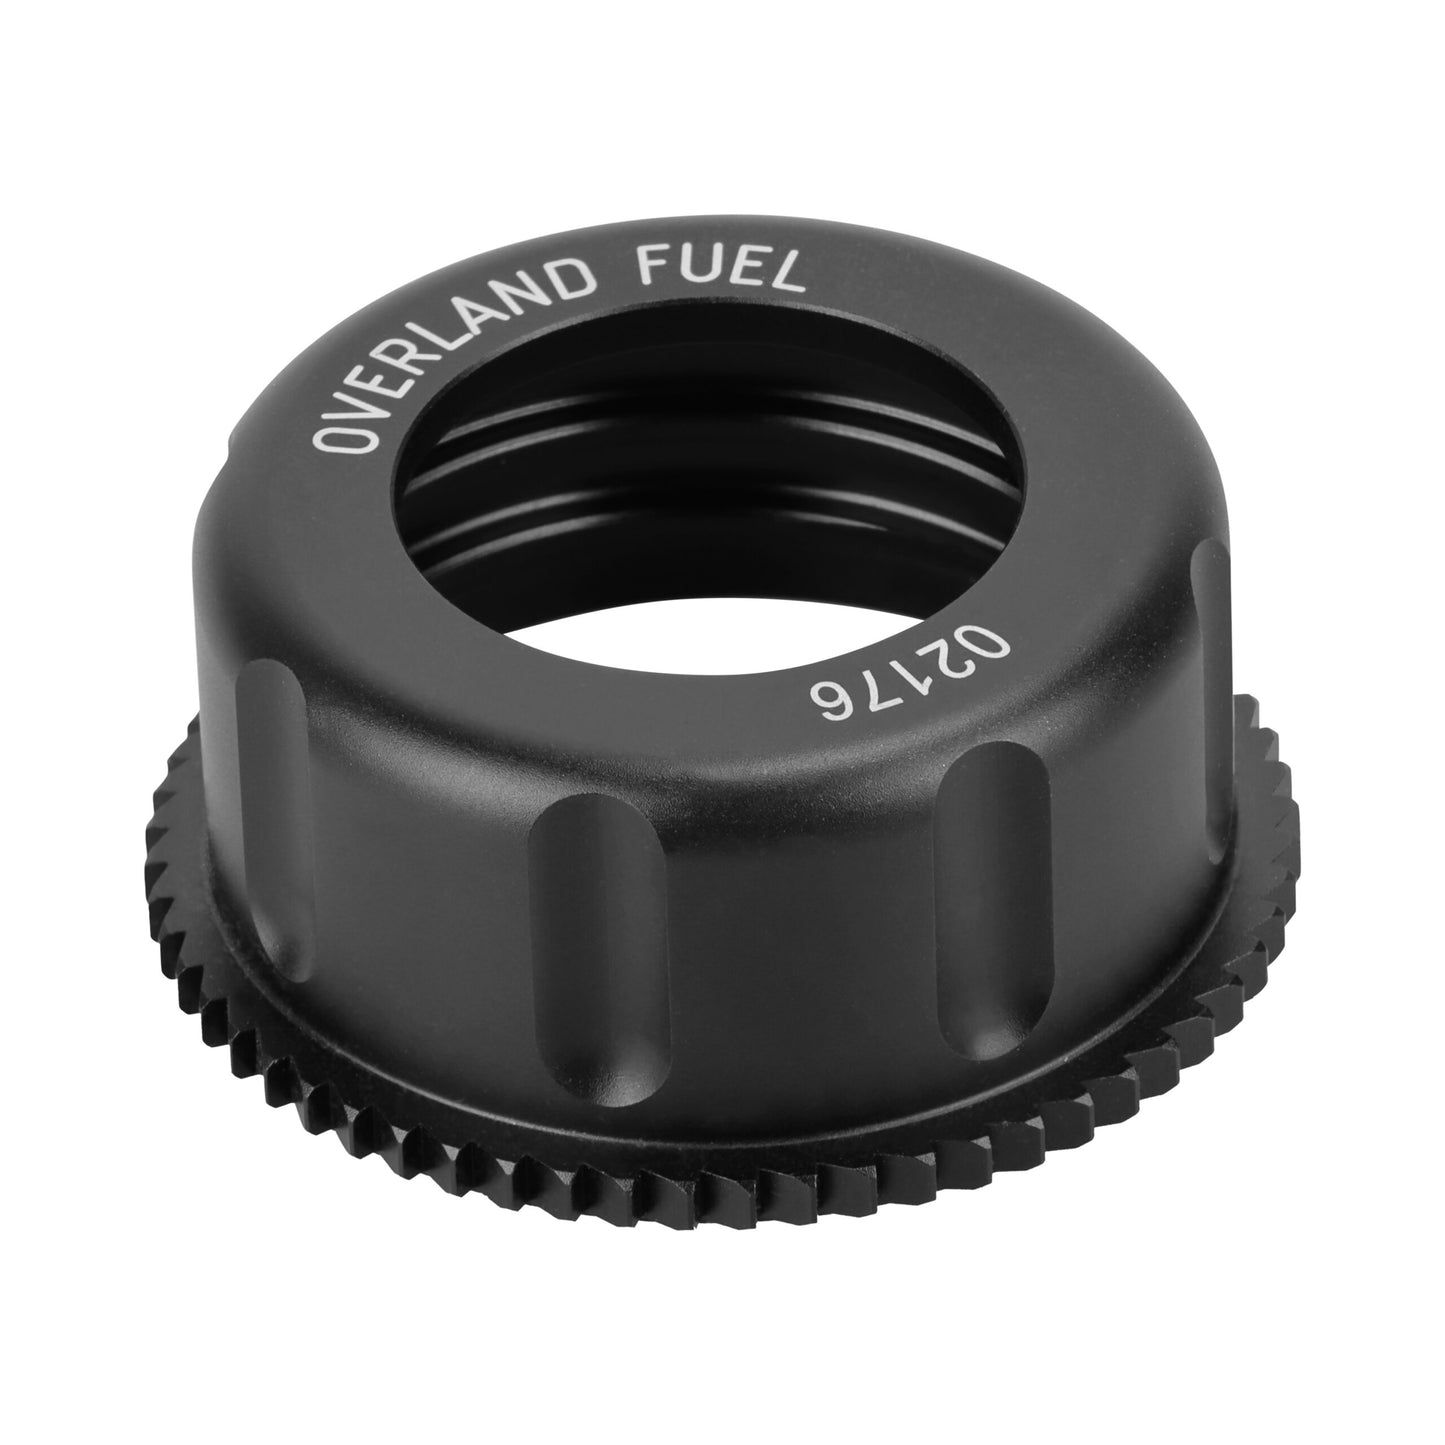 Overland Fuel Aluminium cap